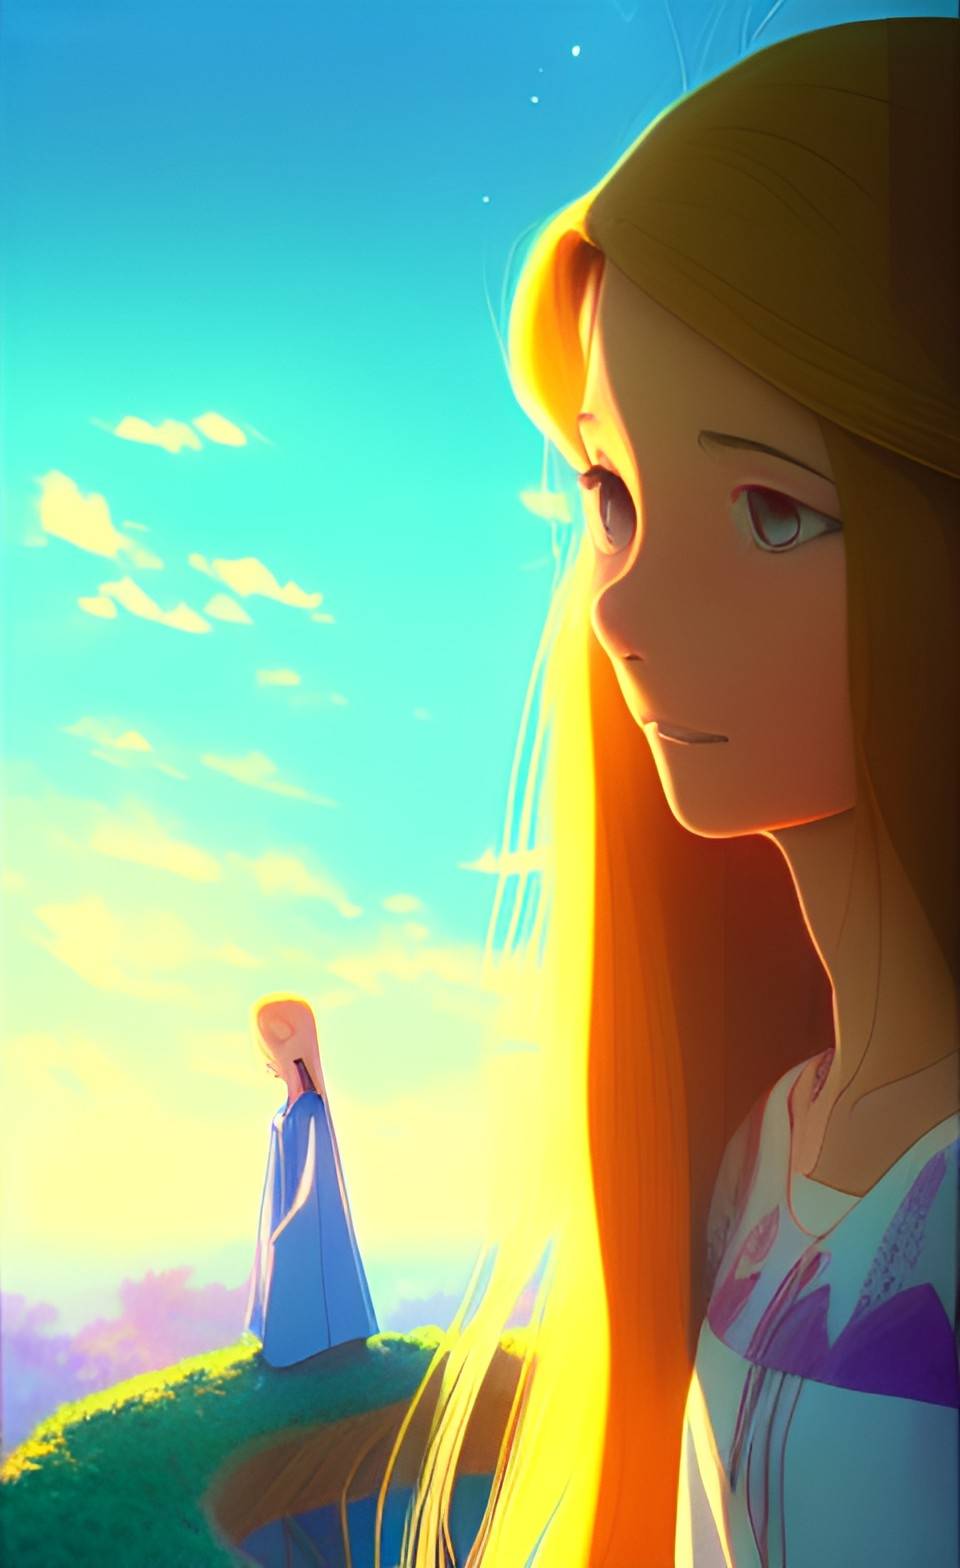 Anime Rapunzel by jsportraiture on DeviantArt